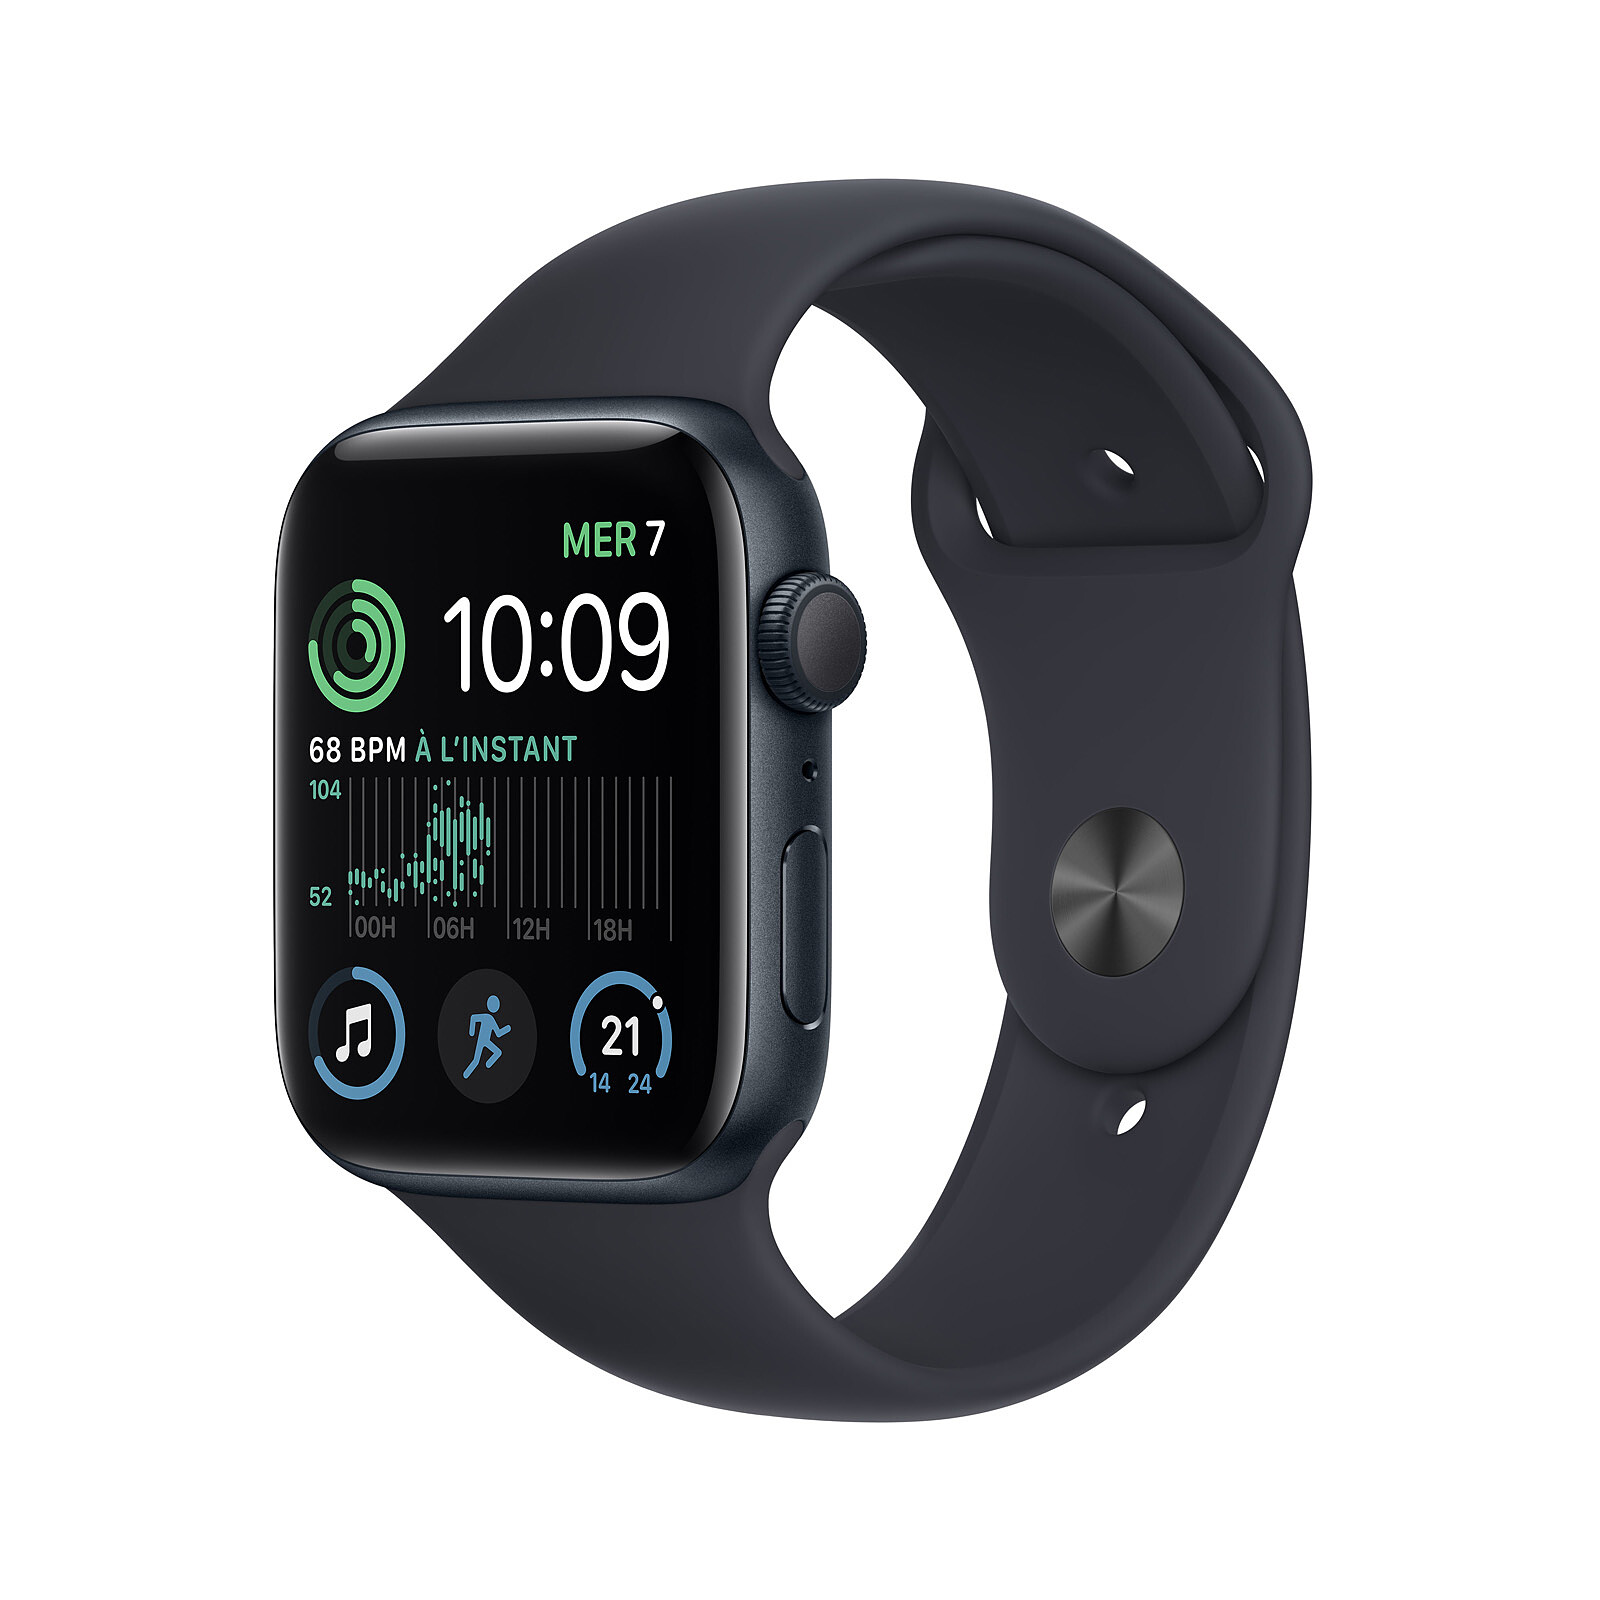 L'Apple Watch pourrait septupler le marché des accessoires connectés